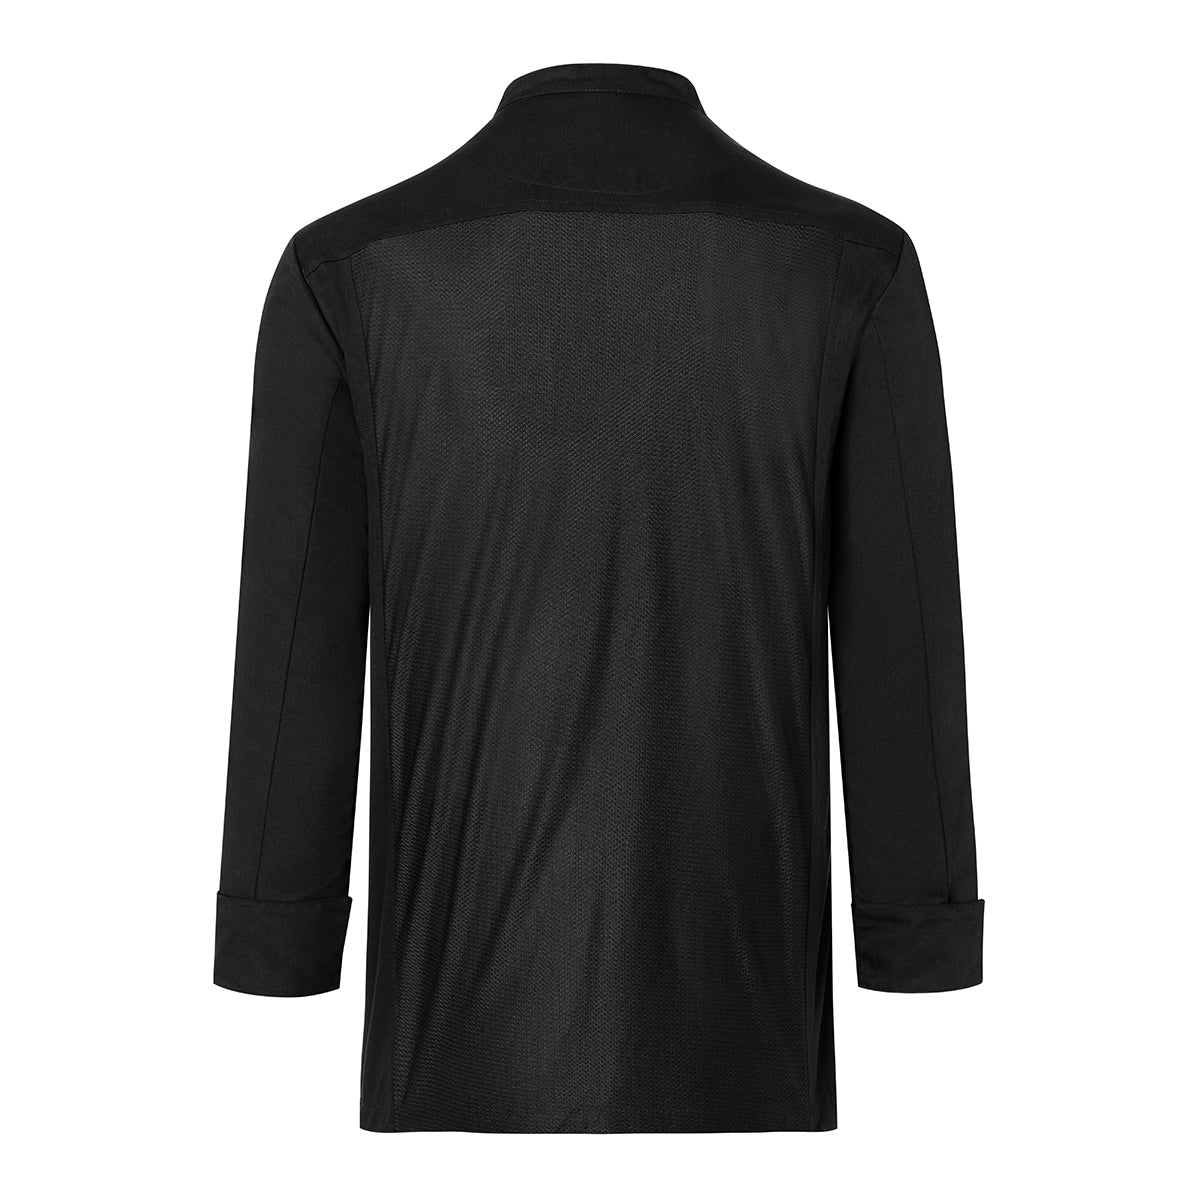 (6 stk) Karlowsky langermet skjorte - svart - str. L